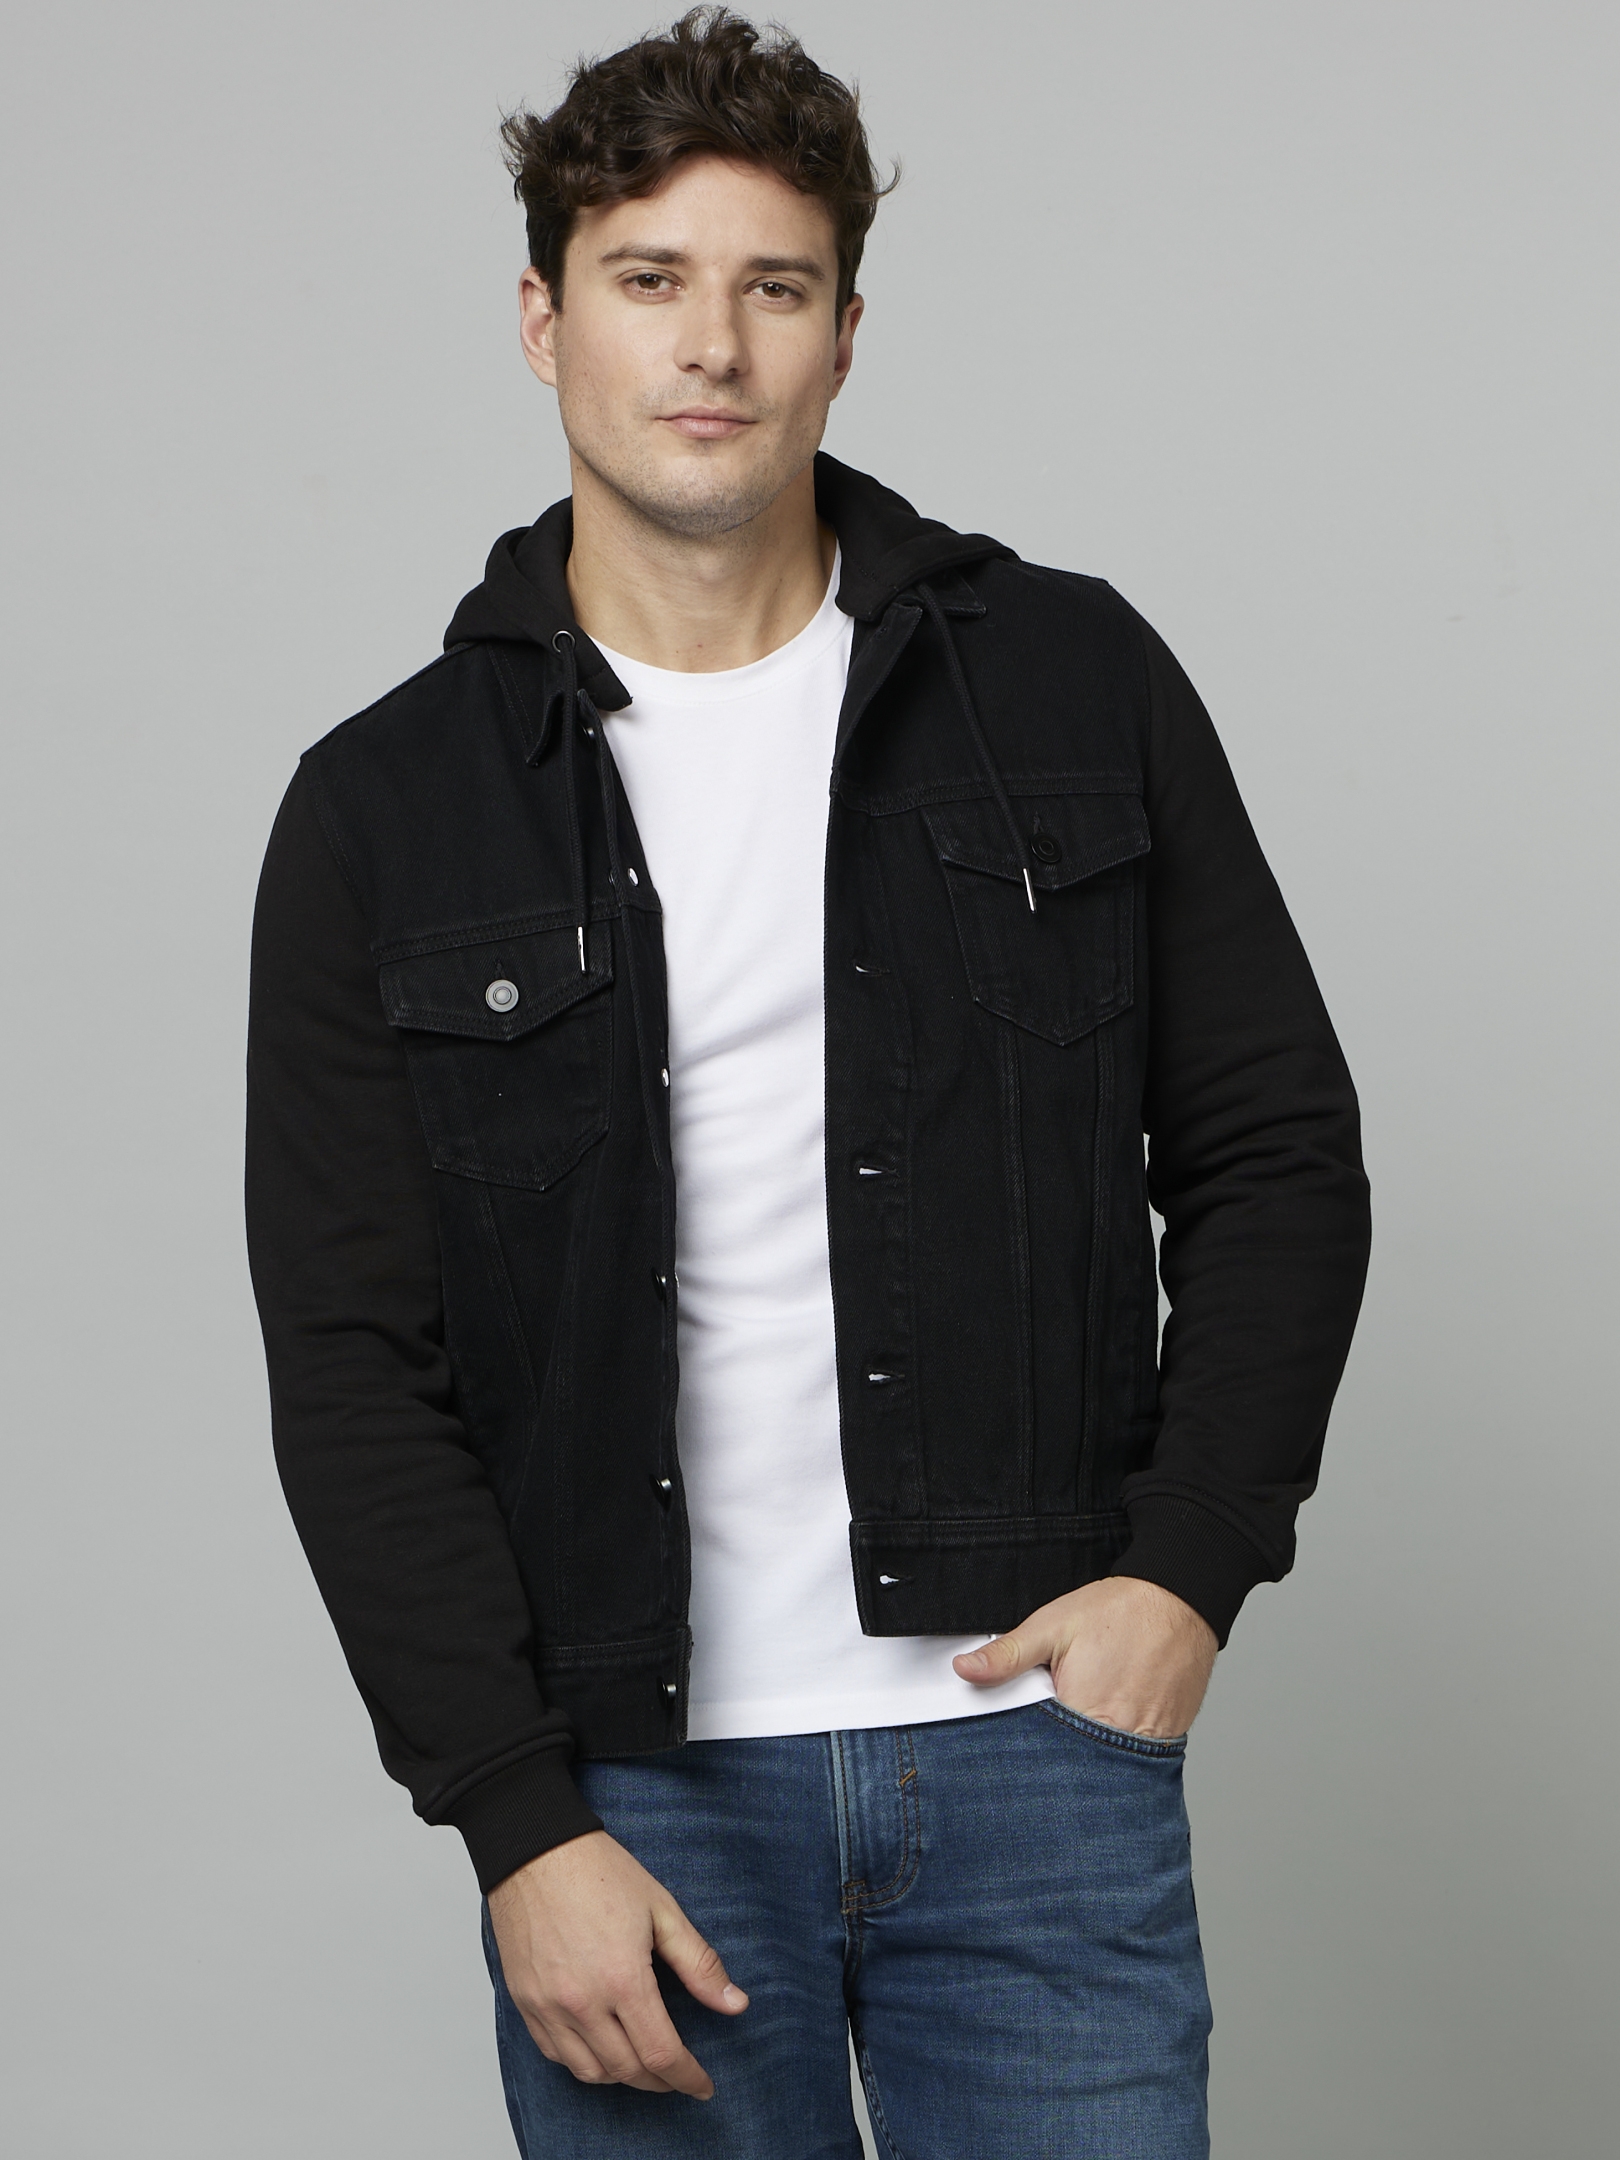 Buy Celio Men's Black Jacket online